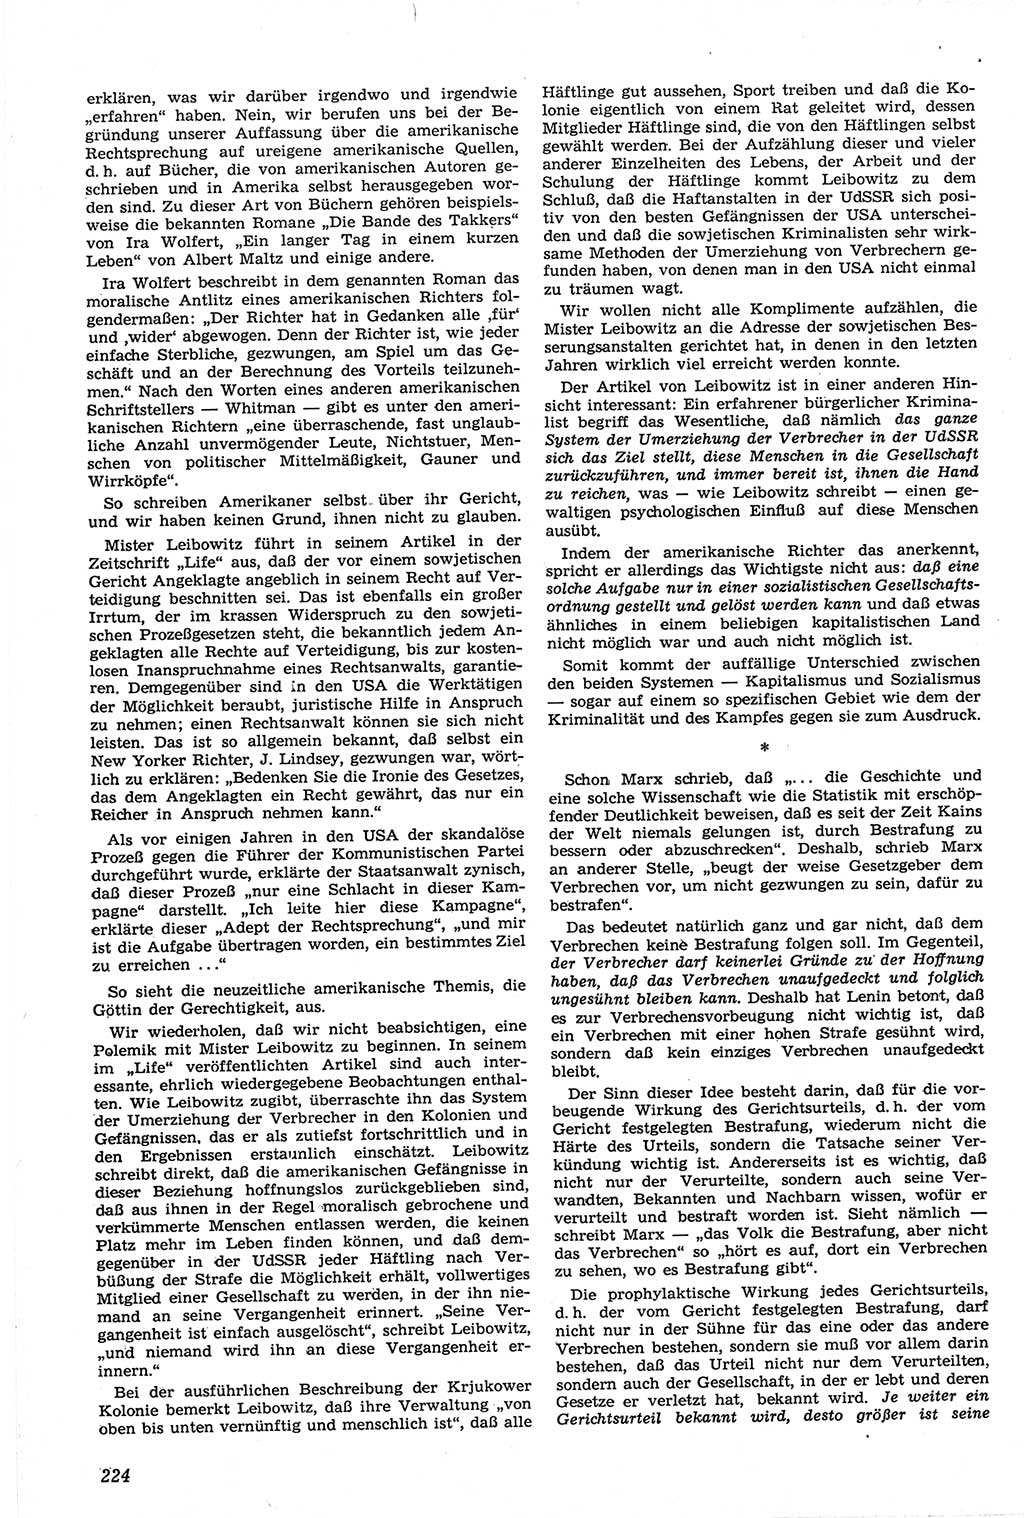 Neue Justiz (NJ), Zeitschrift für Recht und Rechtswissenschaft [Deutsche Demokratische Republik (DDR)], 14. Jahrgang 1960, Seite 224 (NJ DDR 1960, S. 224)